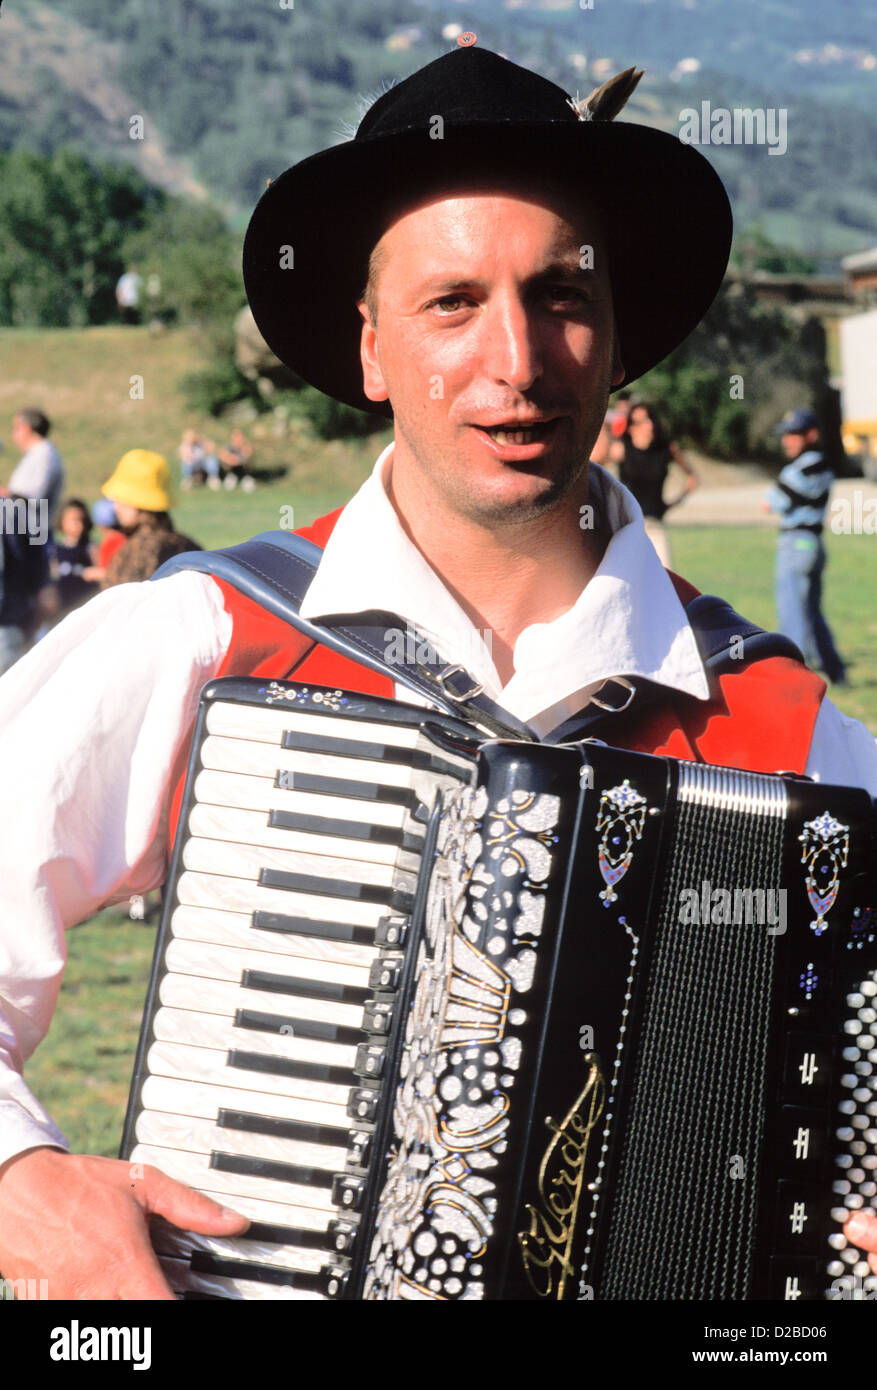 L'Italie, de Fenis. Festival de musique des Alpes italiennes. Homme jouant de l'Accordéon Banque D'Images